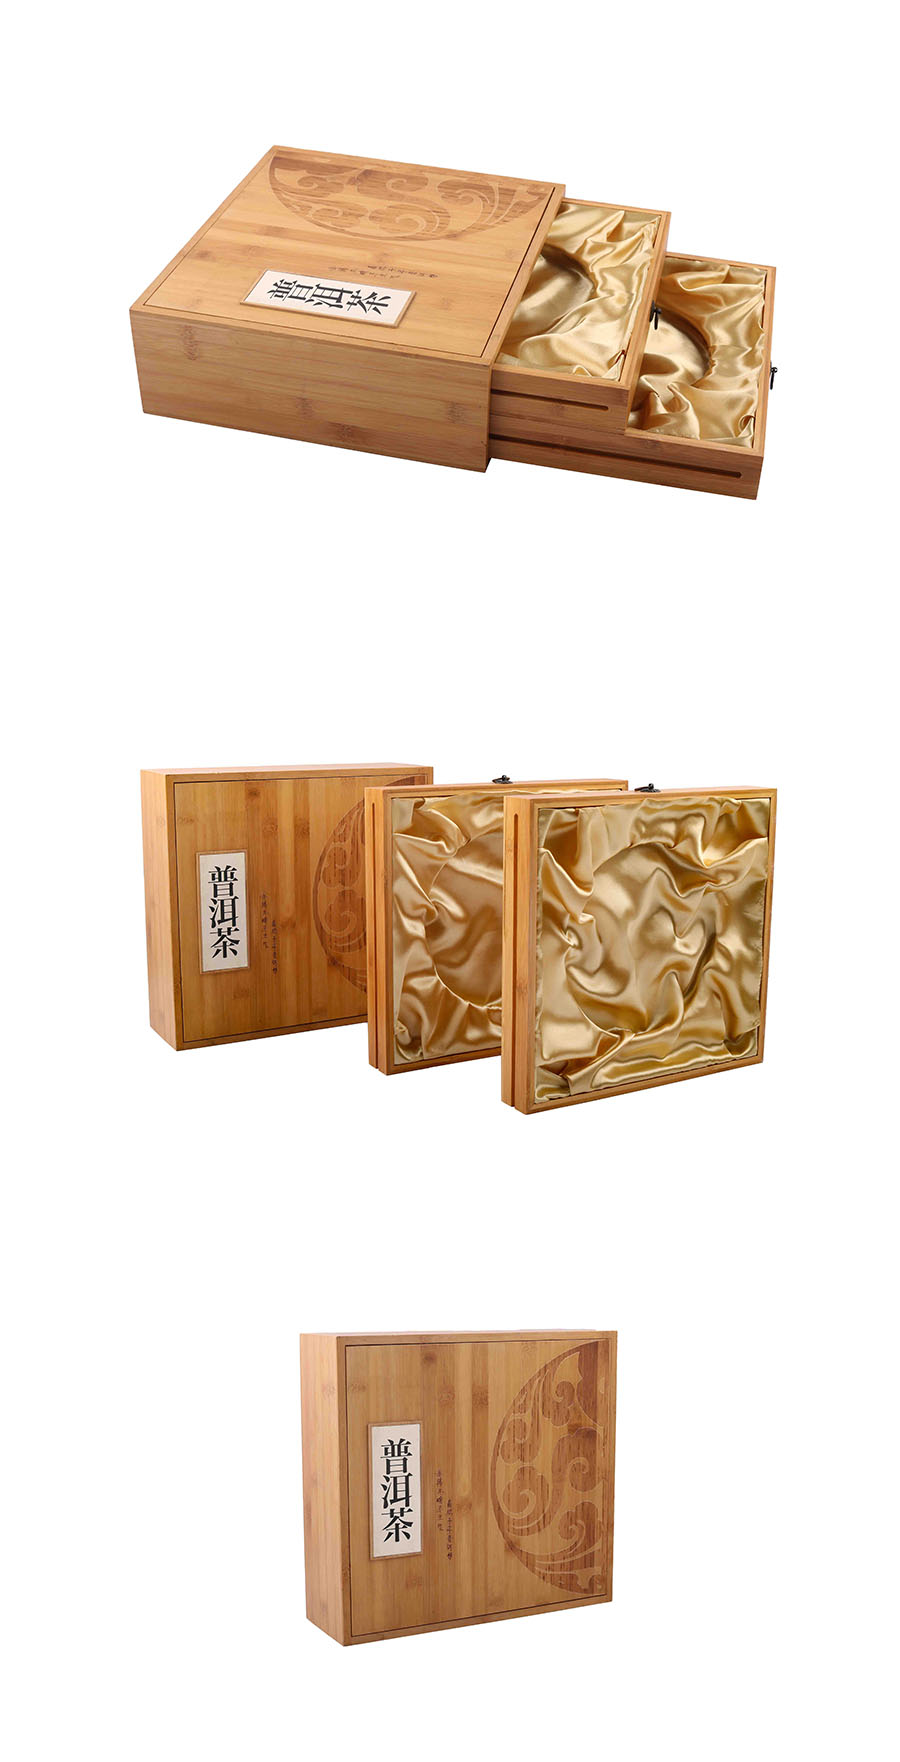 高档茶叶盒,茶叶包装盒,木质包装盒,精品茶叶盒